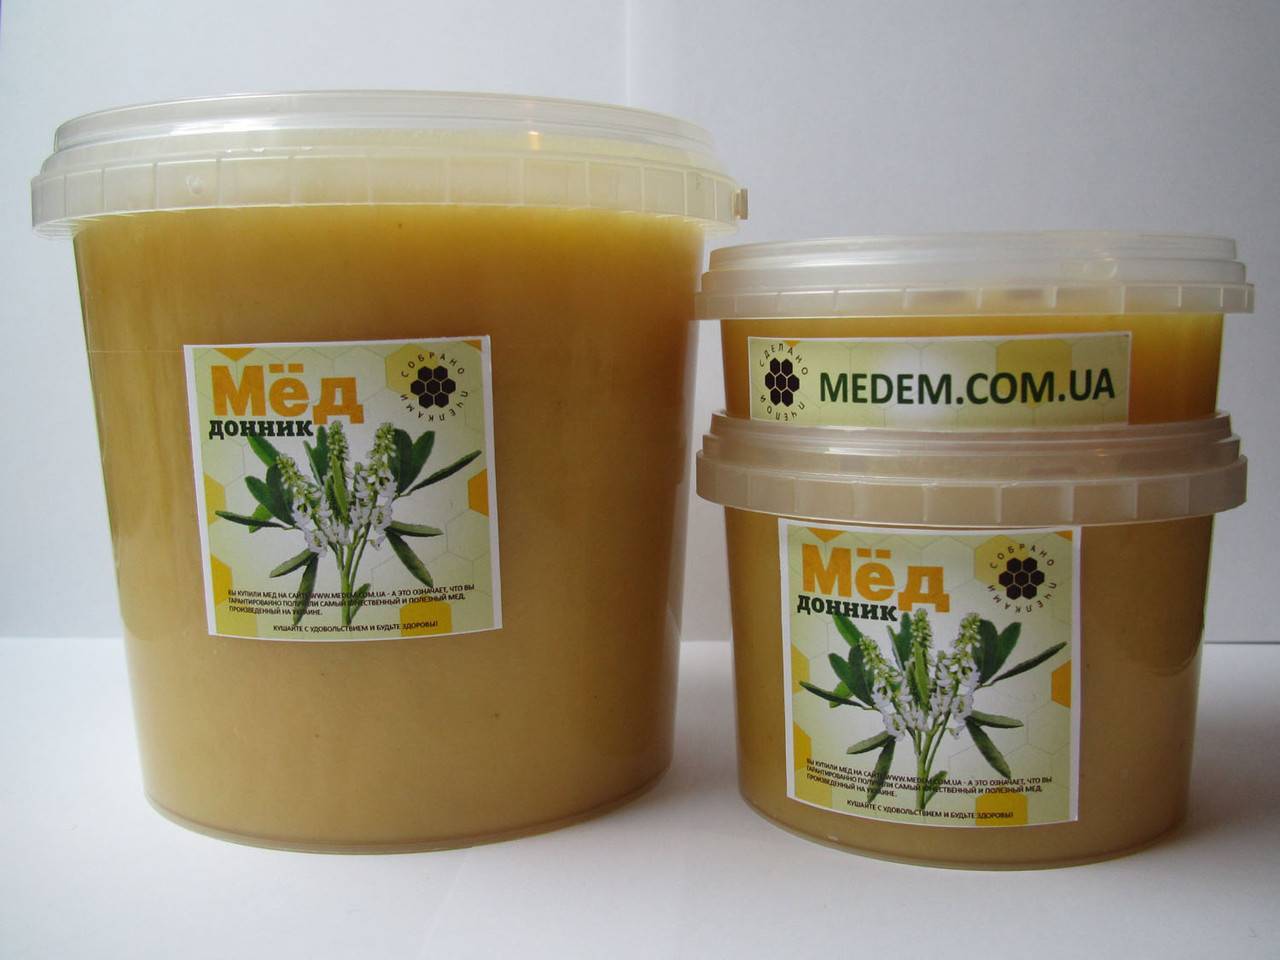 Донниковый мед — лечебные и полезные свойства, применение